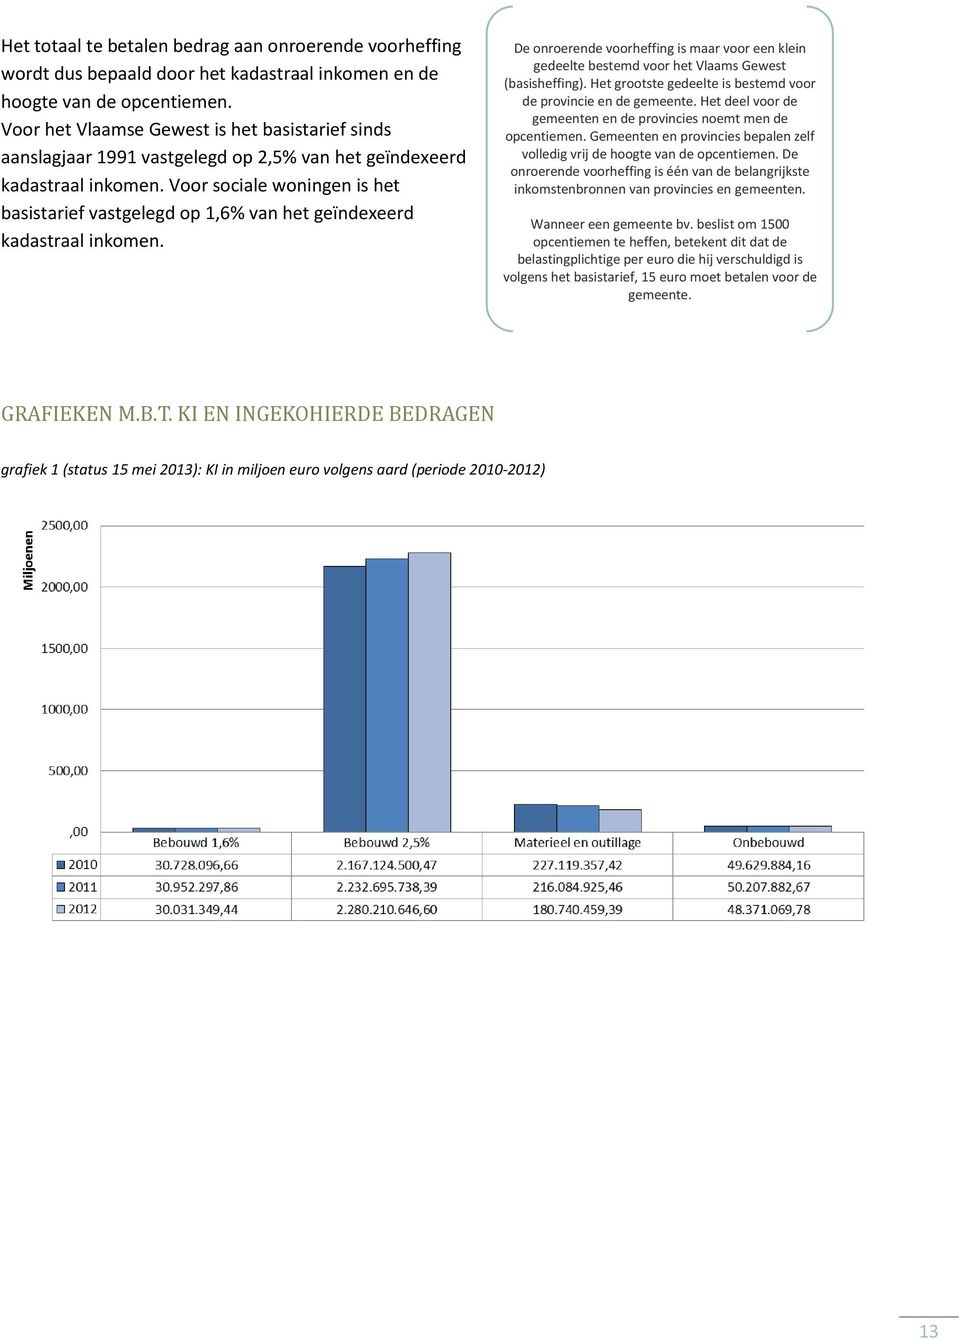 Voor sociale woningen is het basistarief vastgelegd op 1,6% van het geïndexeerd kadastraal inkomen.